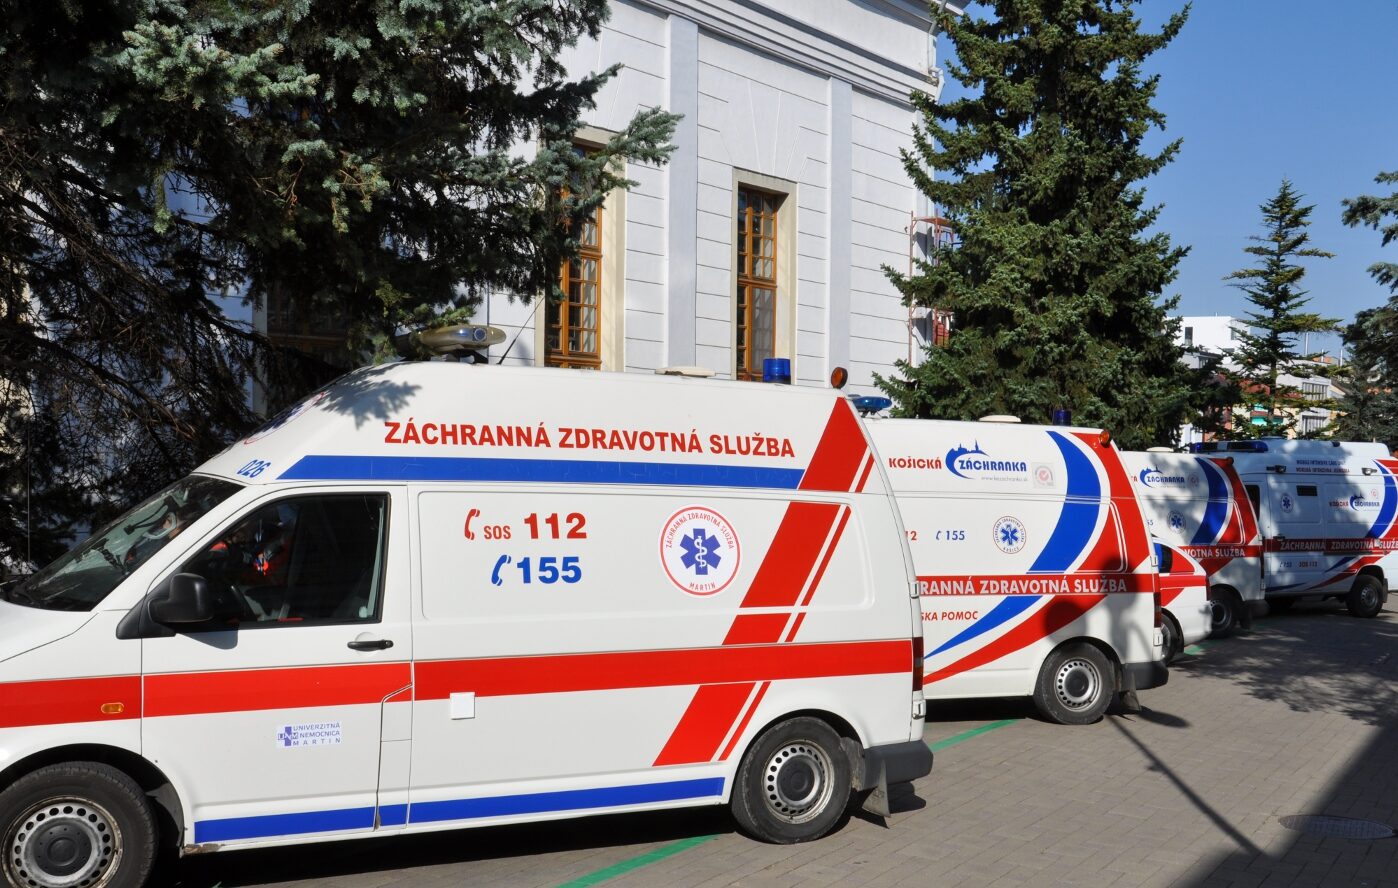 Záchranná služba Košice má veľký nárast počtu zásahov k pacientom s COVID-19